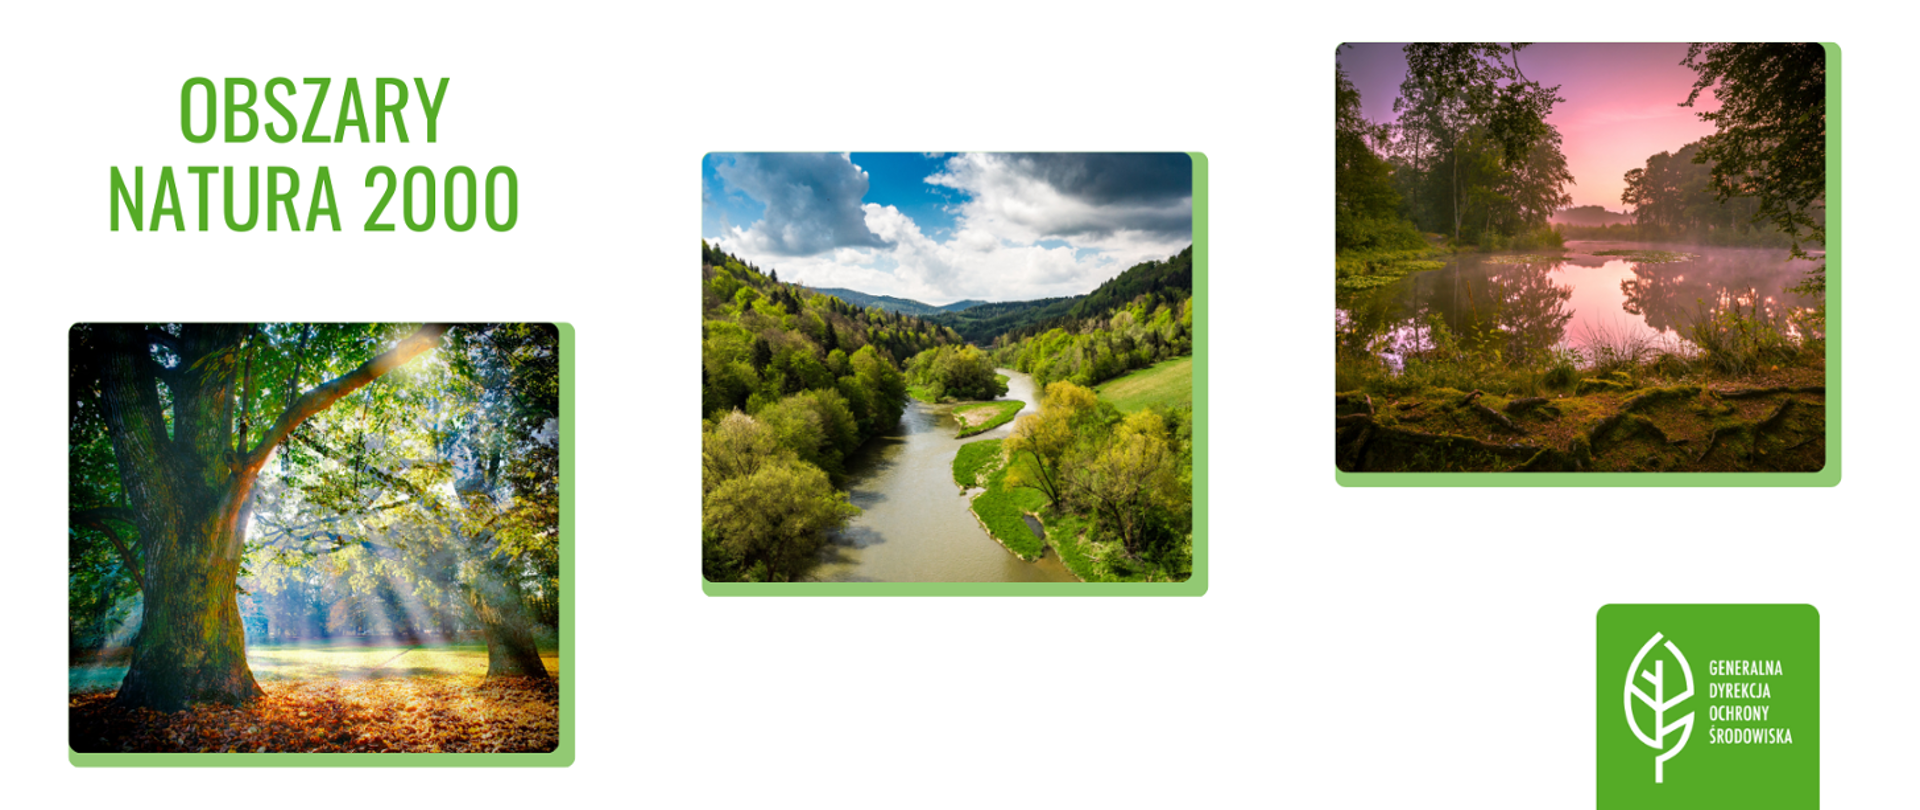 Na białym tle umieszczone w kształcie kwadratów krajobrazy: rzeka, jezioro, las. W sumie 3 kolorowe krajobrazy. W lewym górnym rogu znajduje się napis (zielona czcionka): Obszary Natura 2000. W prawym dolnym rogu na zielonym tle znajduje się logo (biały listek) Generalnej Dyrekcji Ochrony Środowiska."